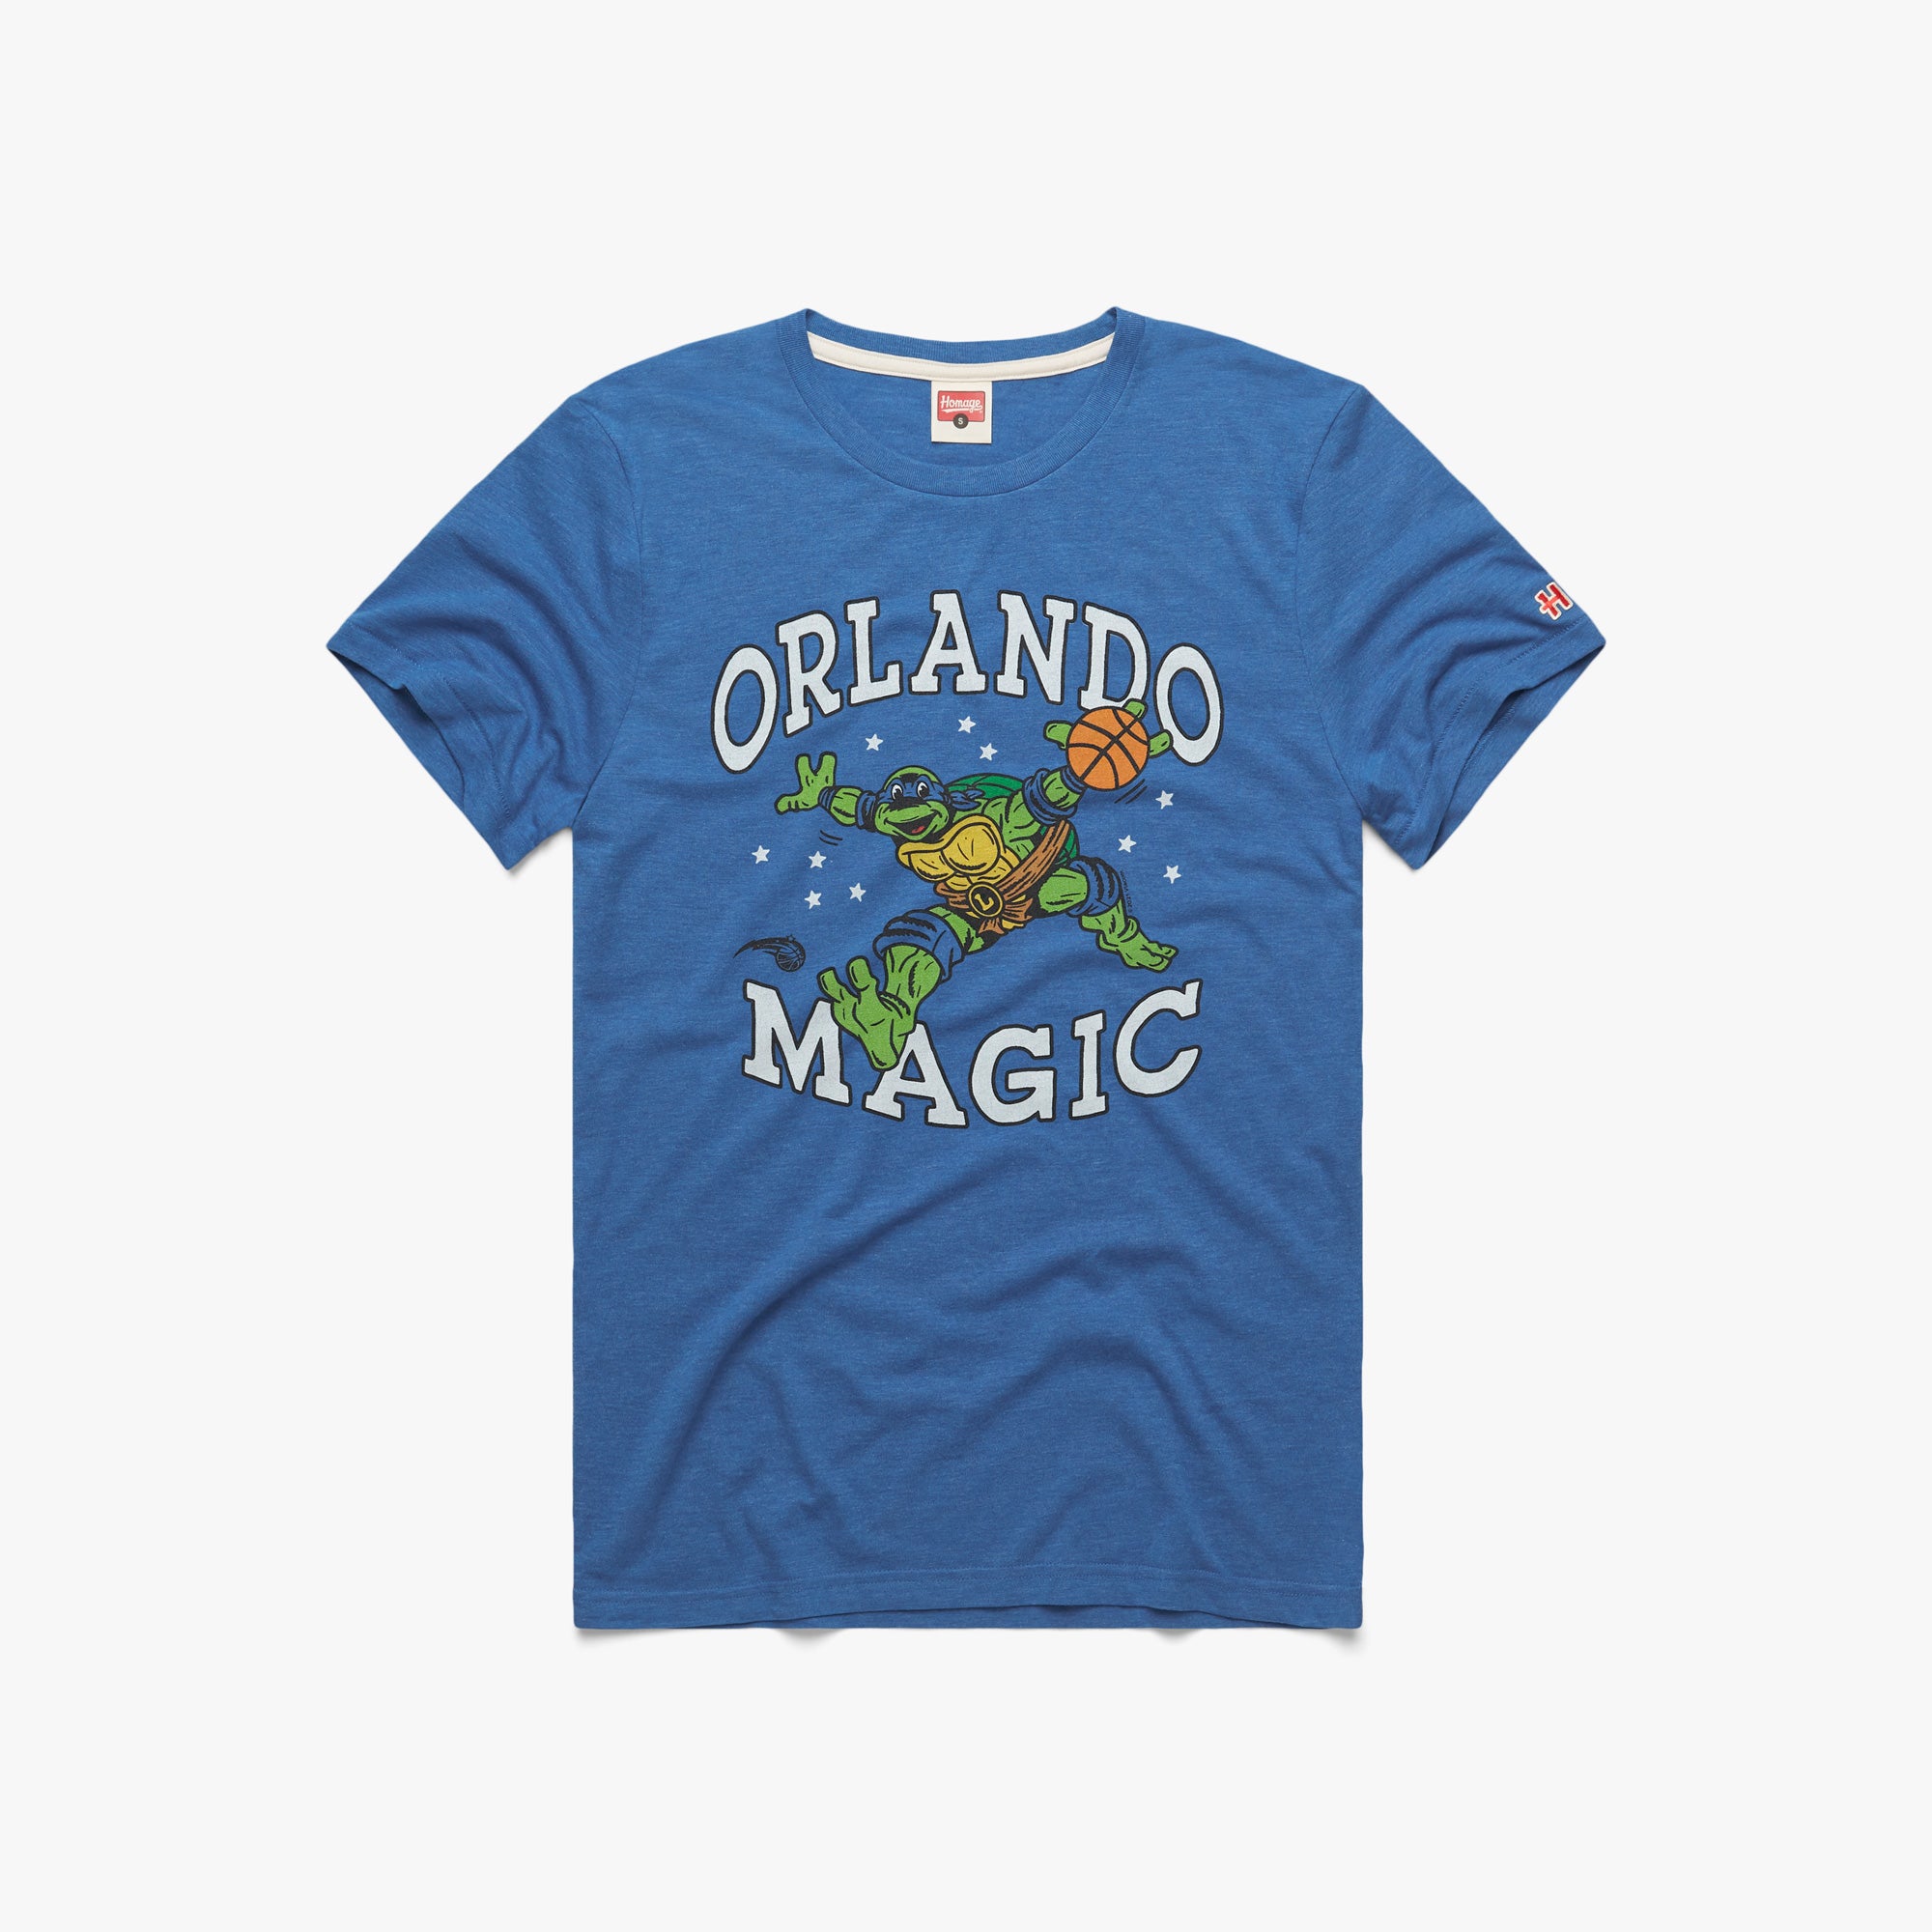 MENS Orlando Magic NBA Team Logo White T-Shirt White